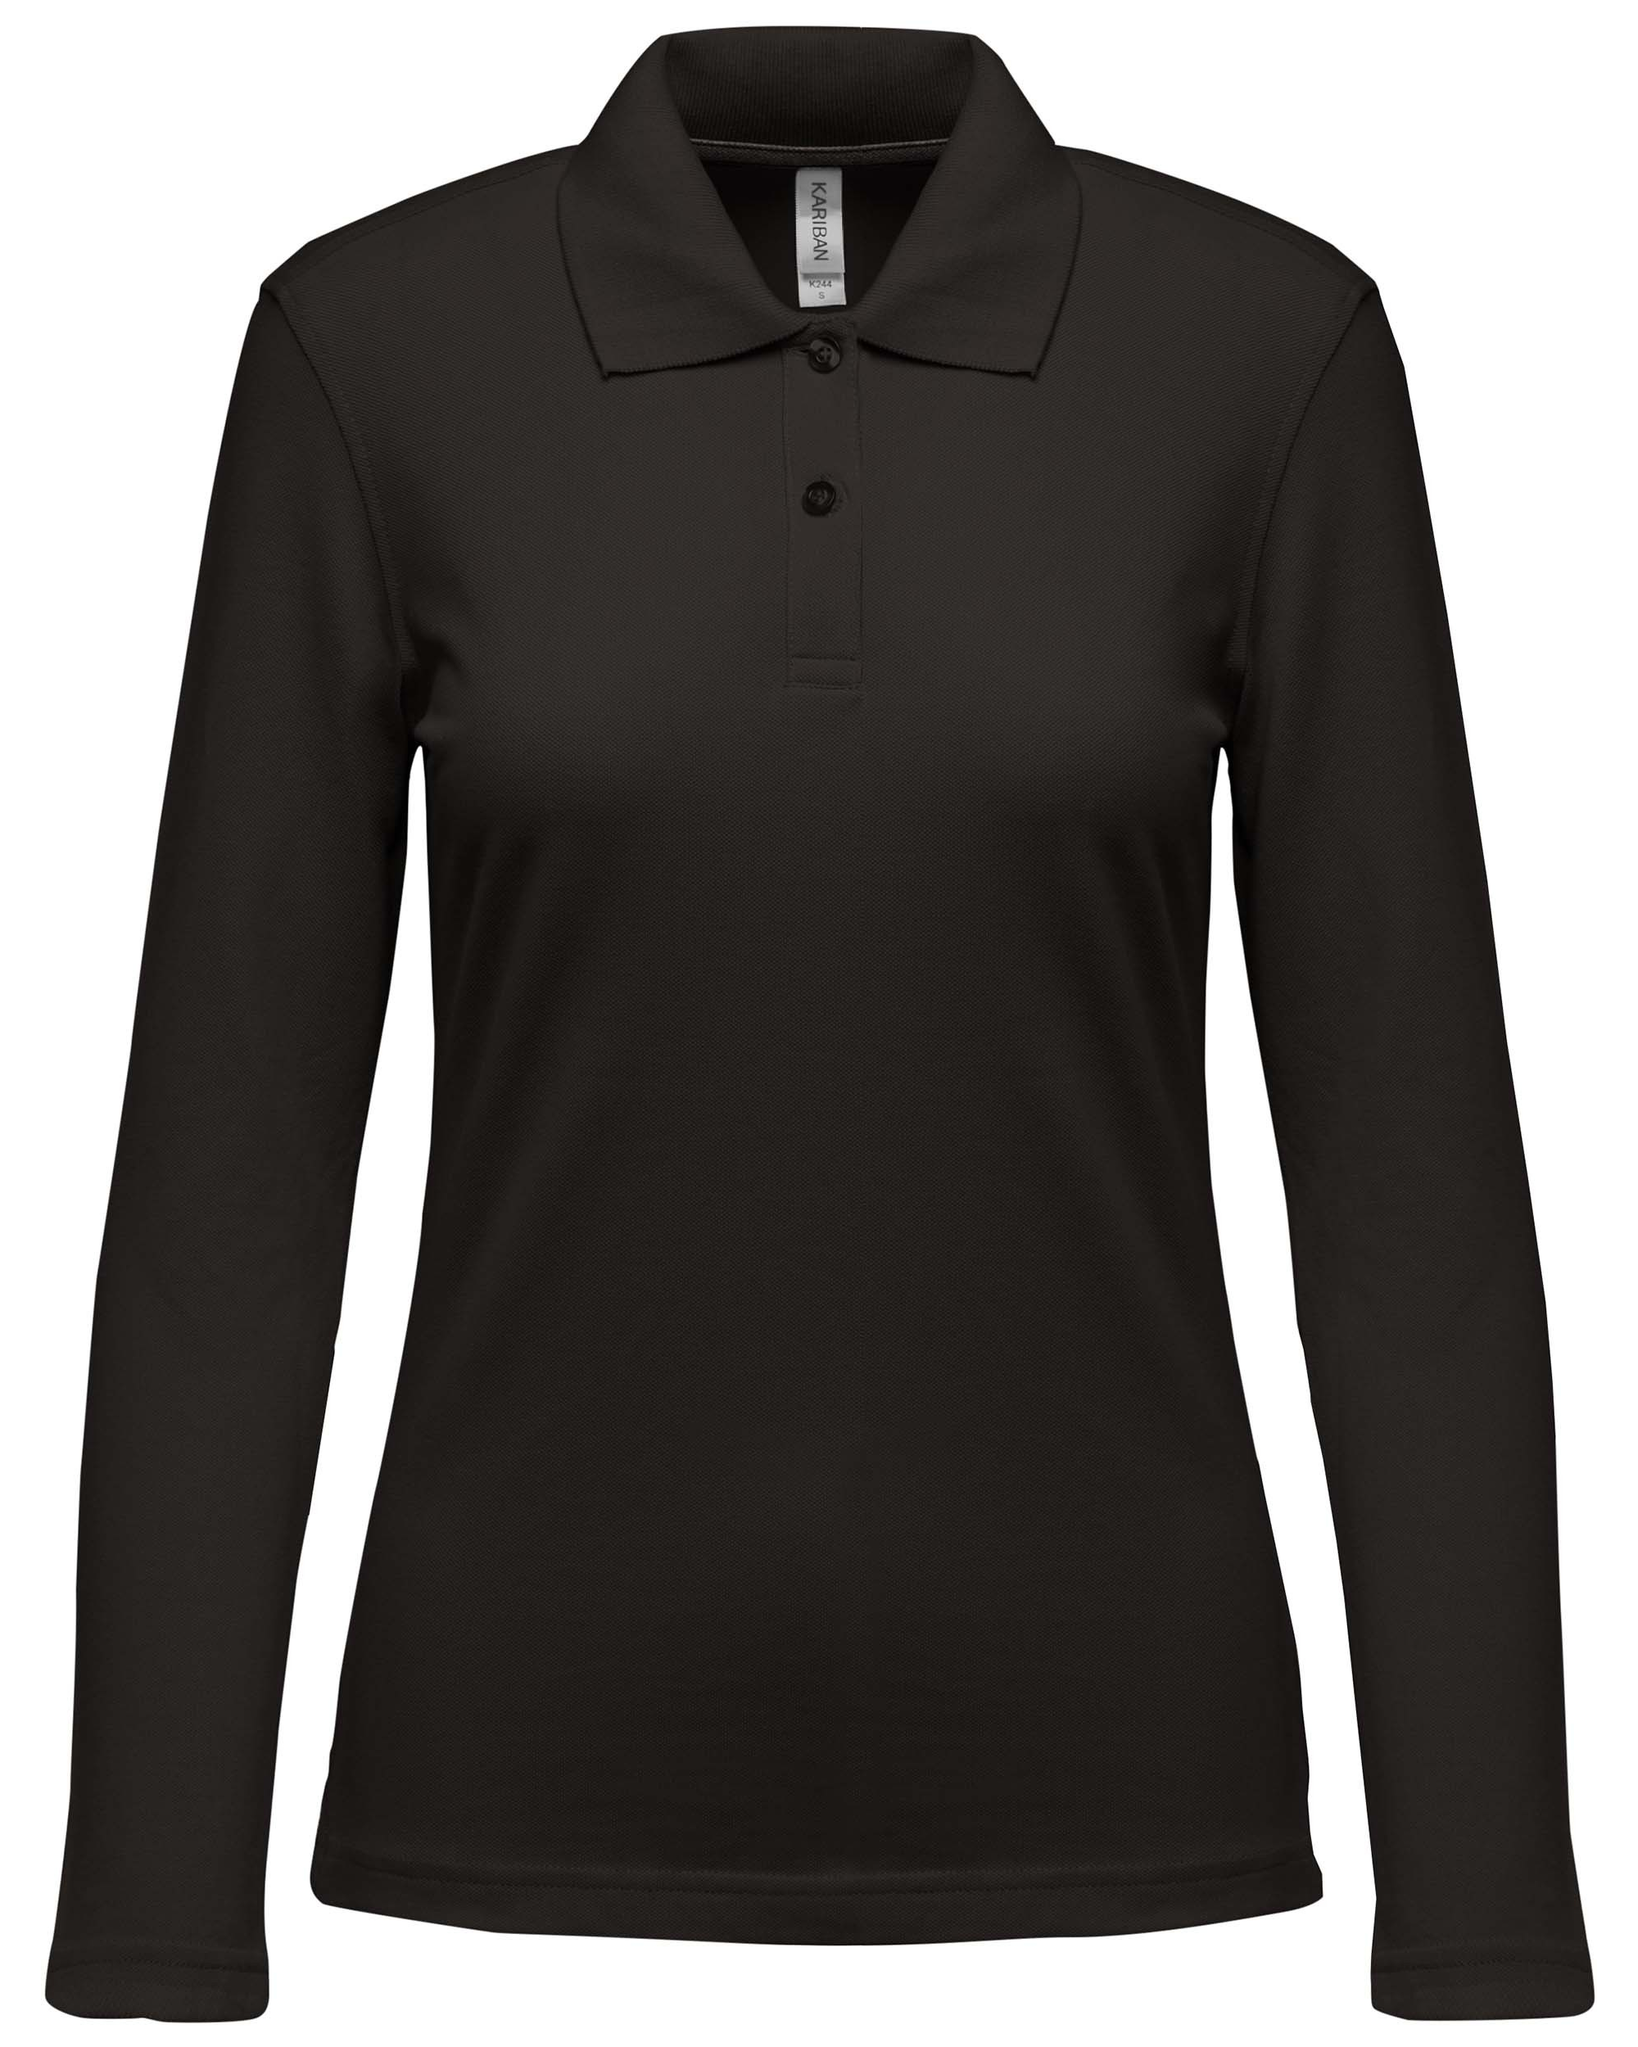 Moeras Vertrouwelijk Pamflet Shop Poloshirt Dames Zwart | UP TO 56% OFF